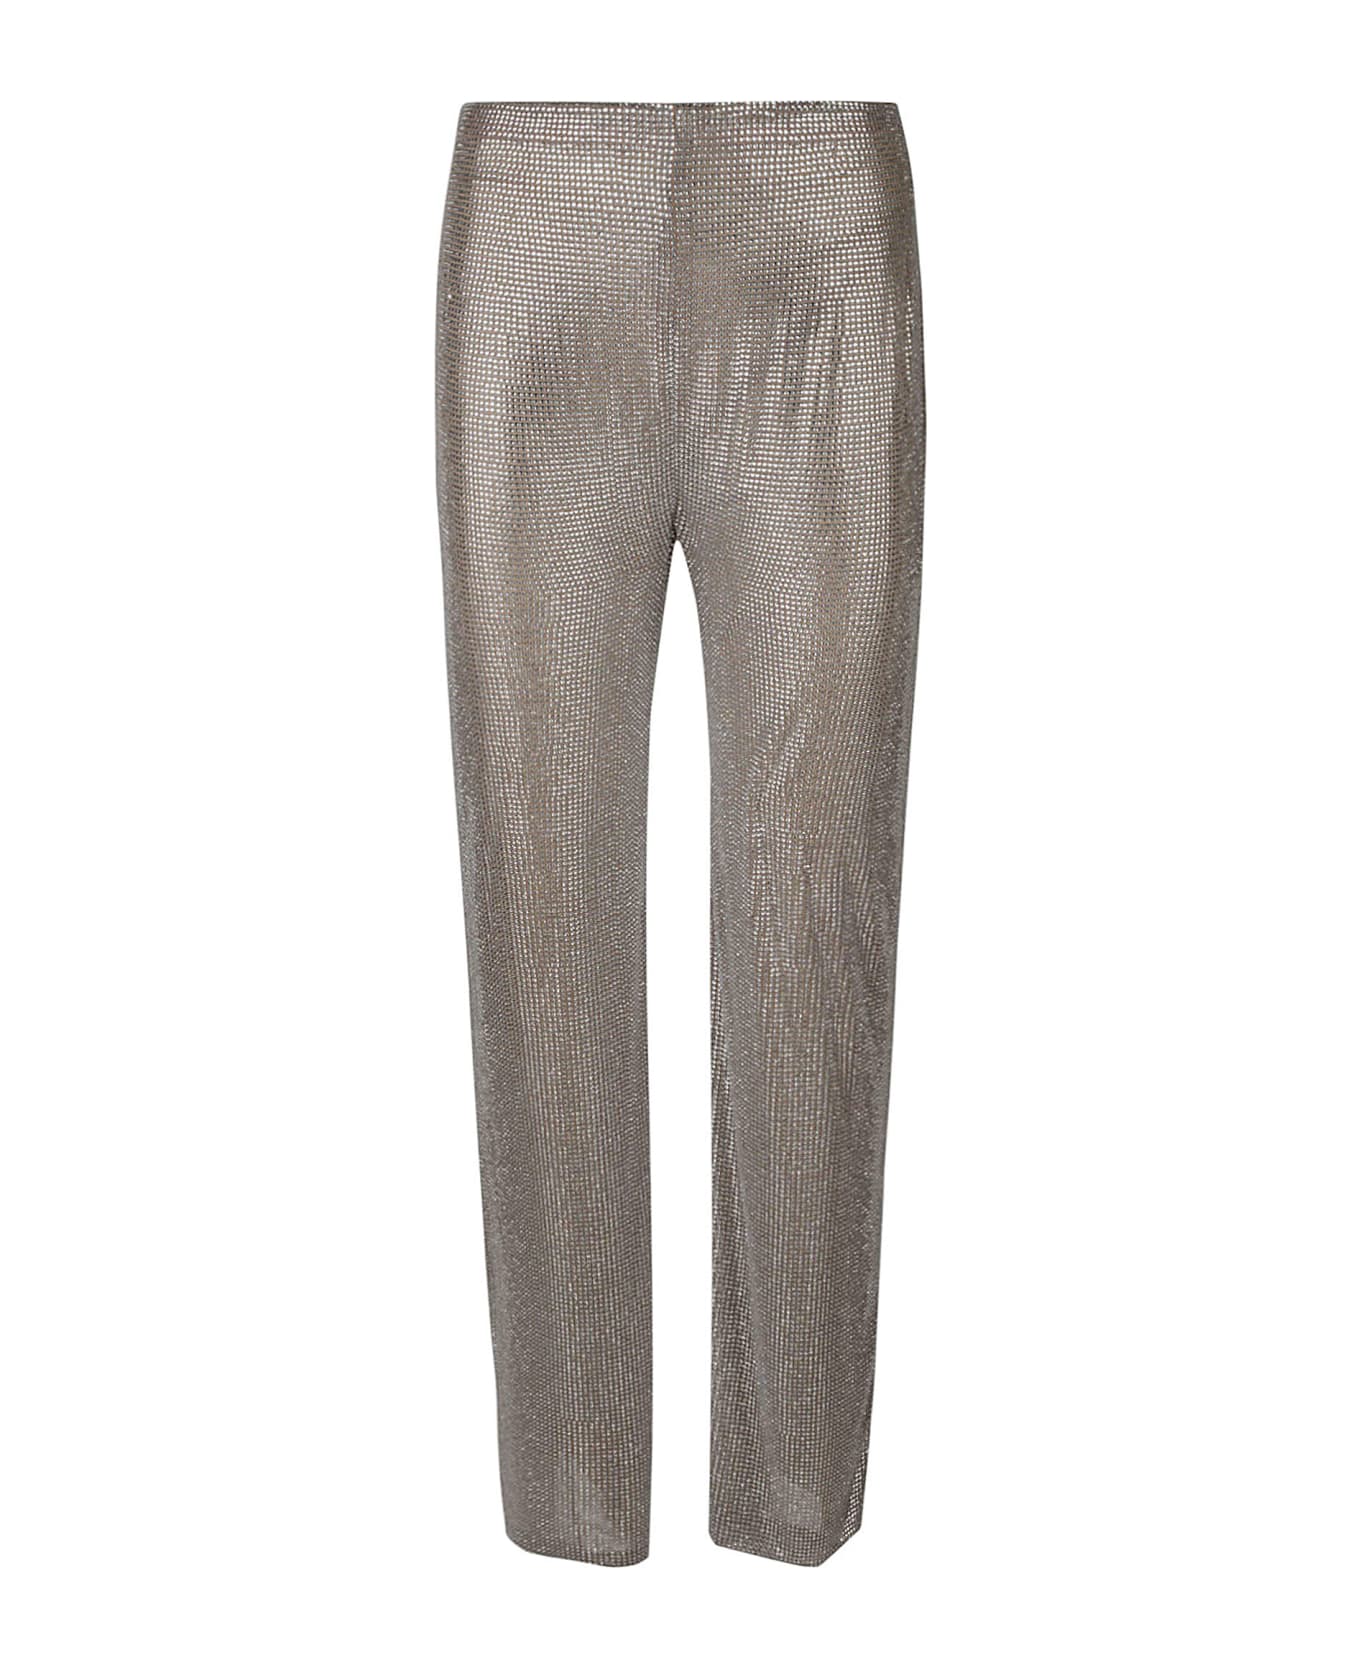 Giuseppe di Morabito Rhinestone Embellished Trousers - Beige+Crystal ボトムス